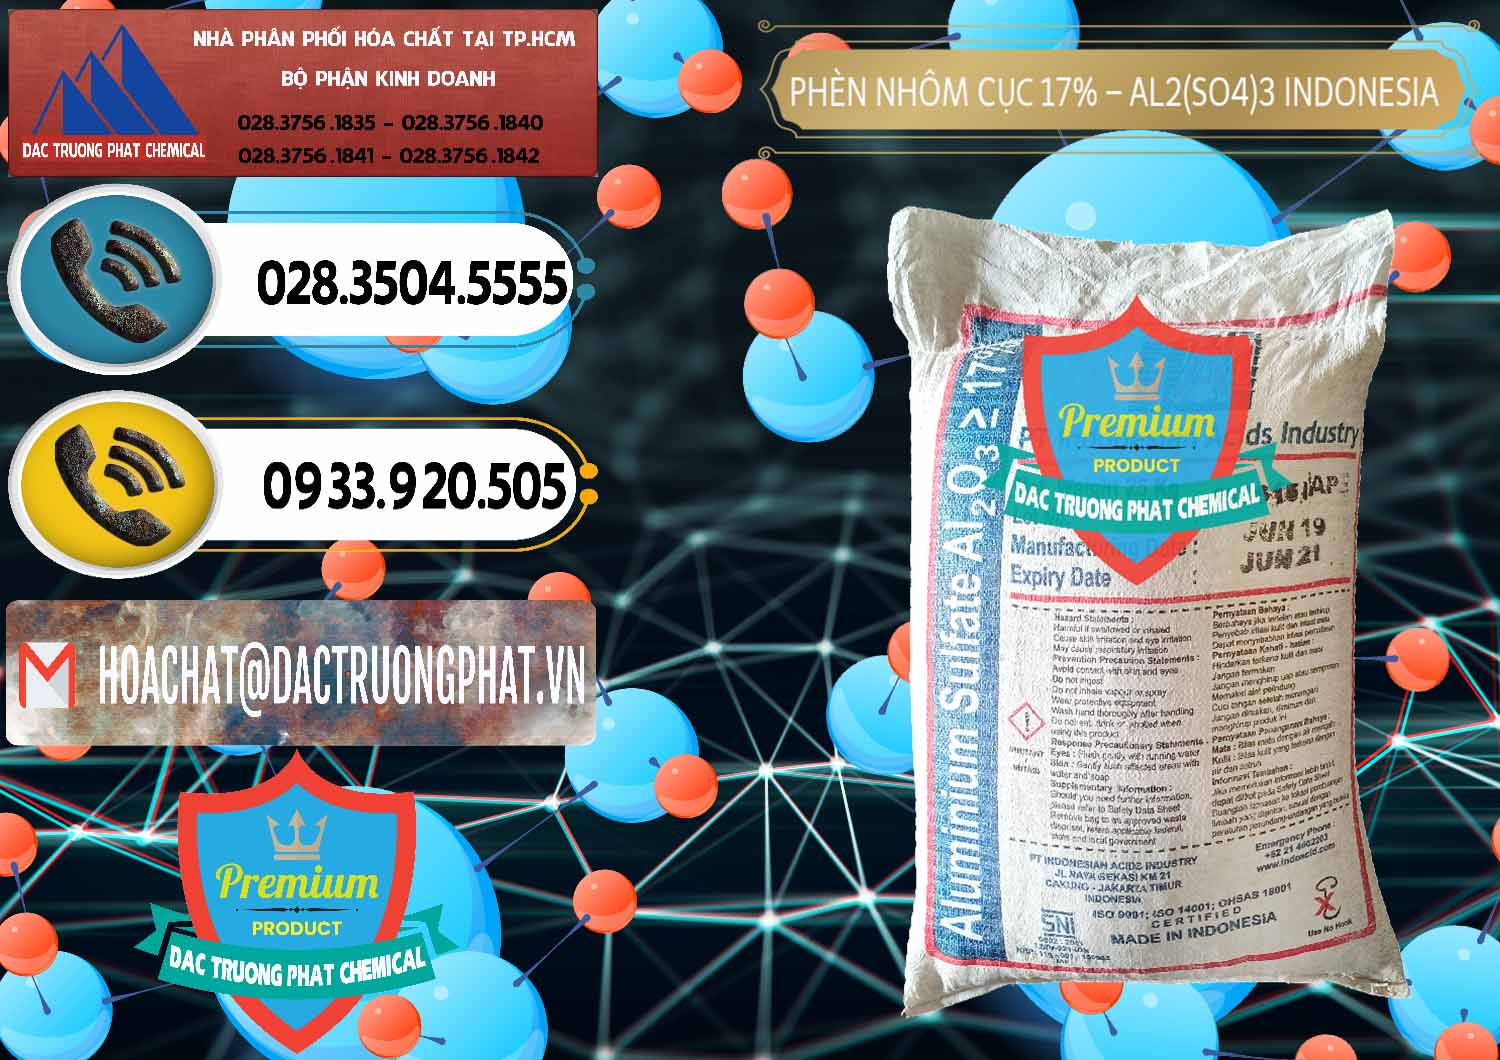 Công ty chuyên kinh doanh & bán Phèn Nhôm Cục - Al2(SO4)3 17% bao 25kg Indonesia - 0115 - Nơi chuyên phân phối & kinh doanh hóa chất tại TP.HCM - hoachatdetnhuom.vn